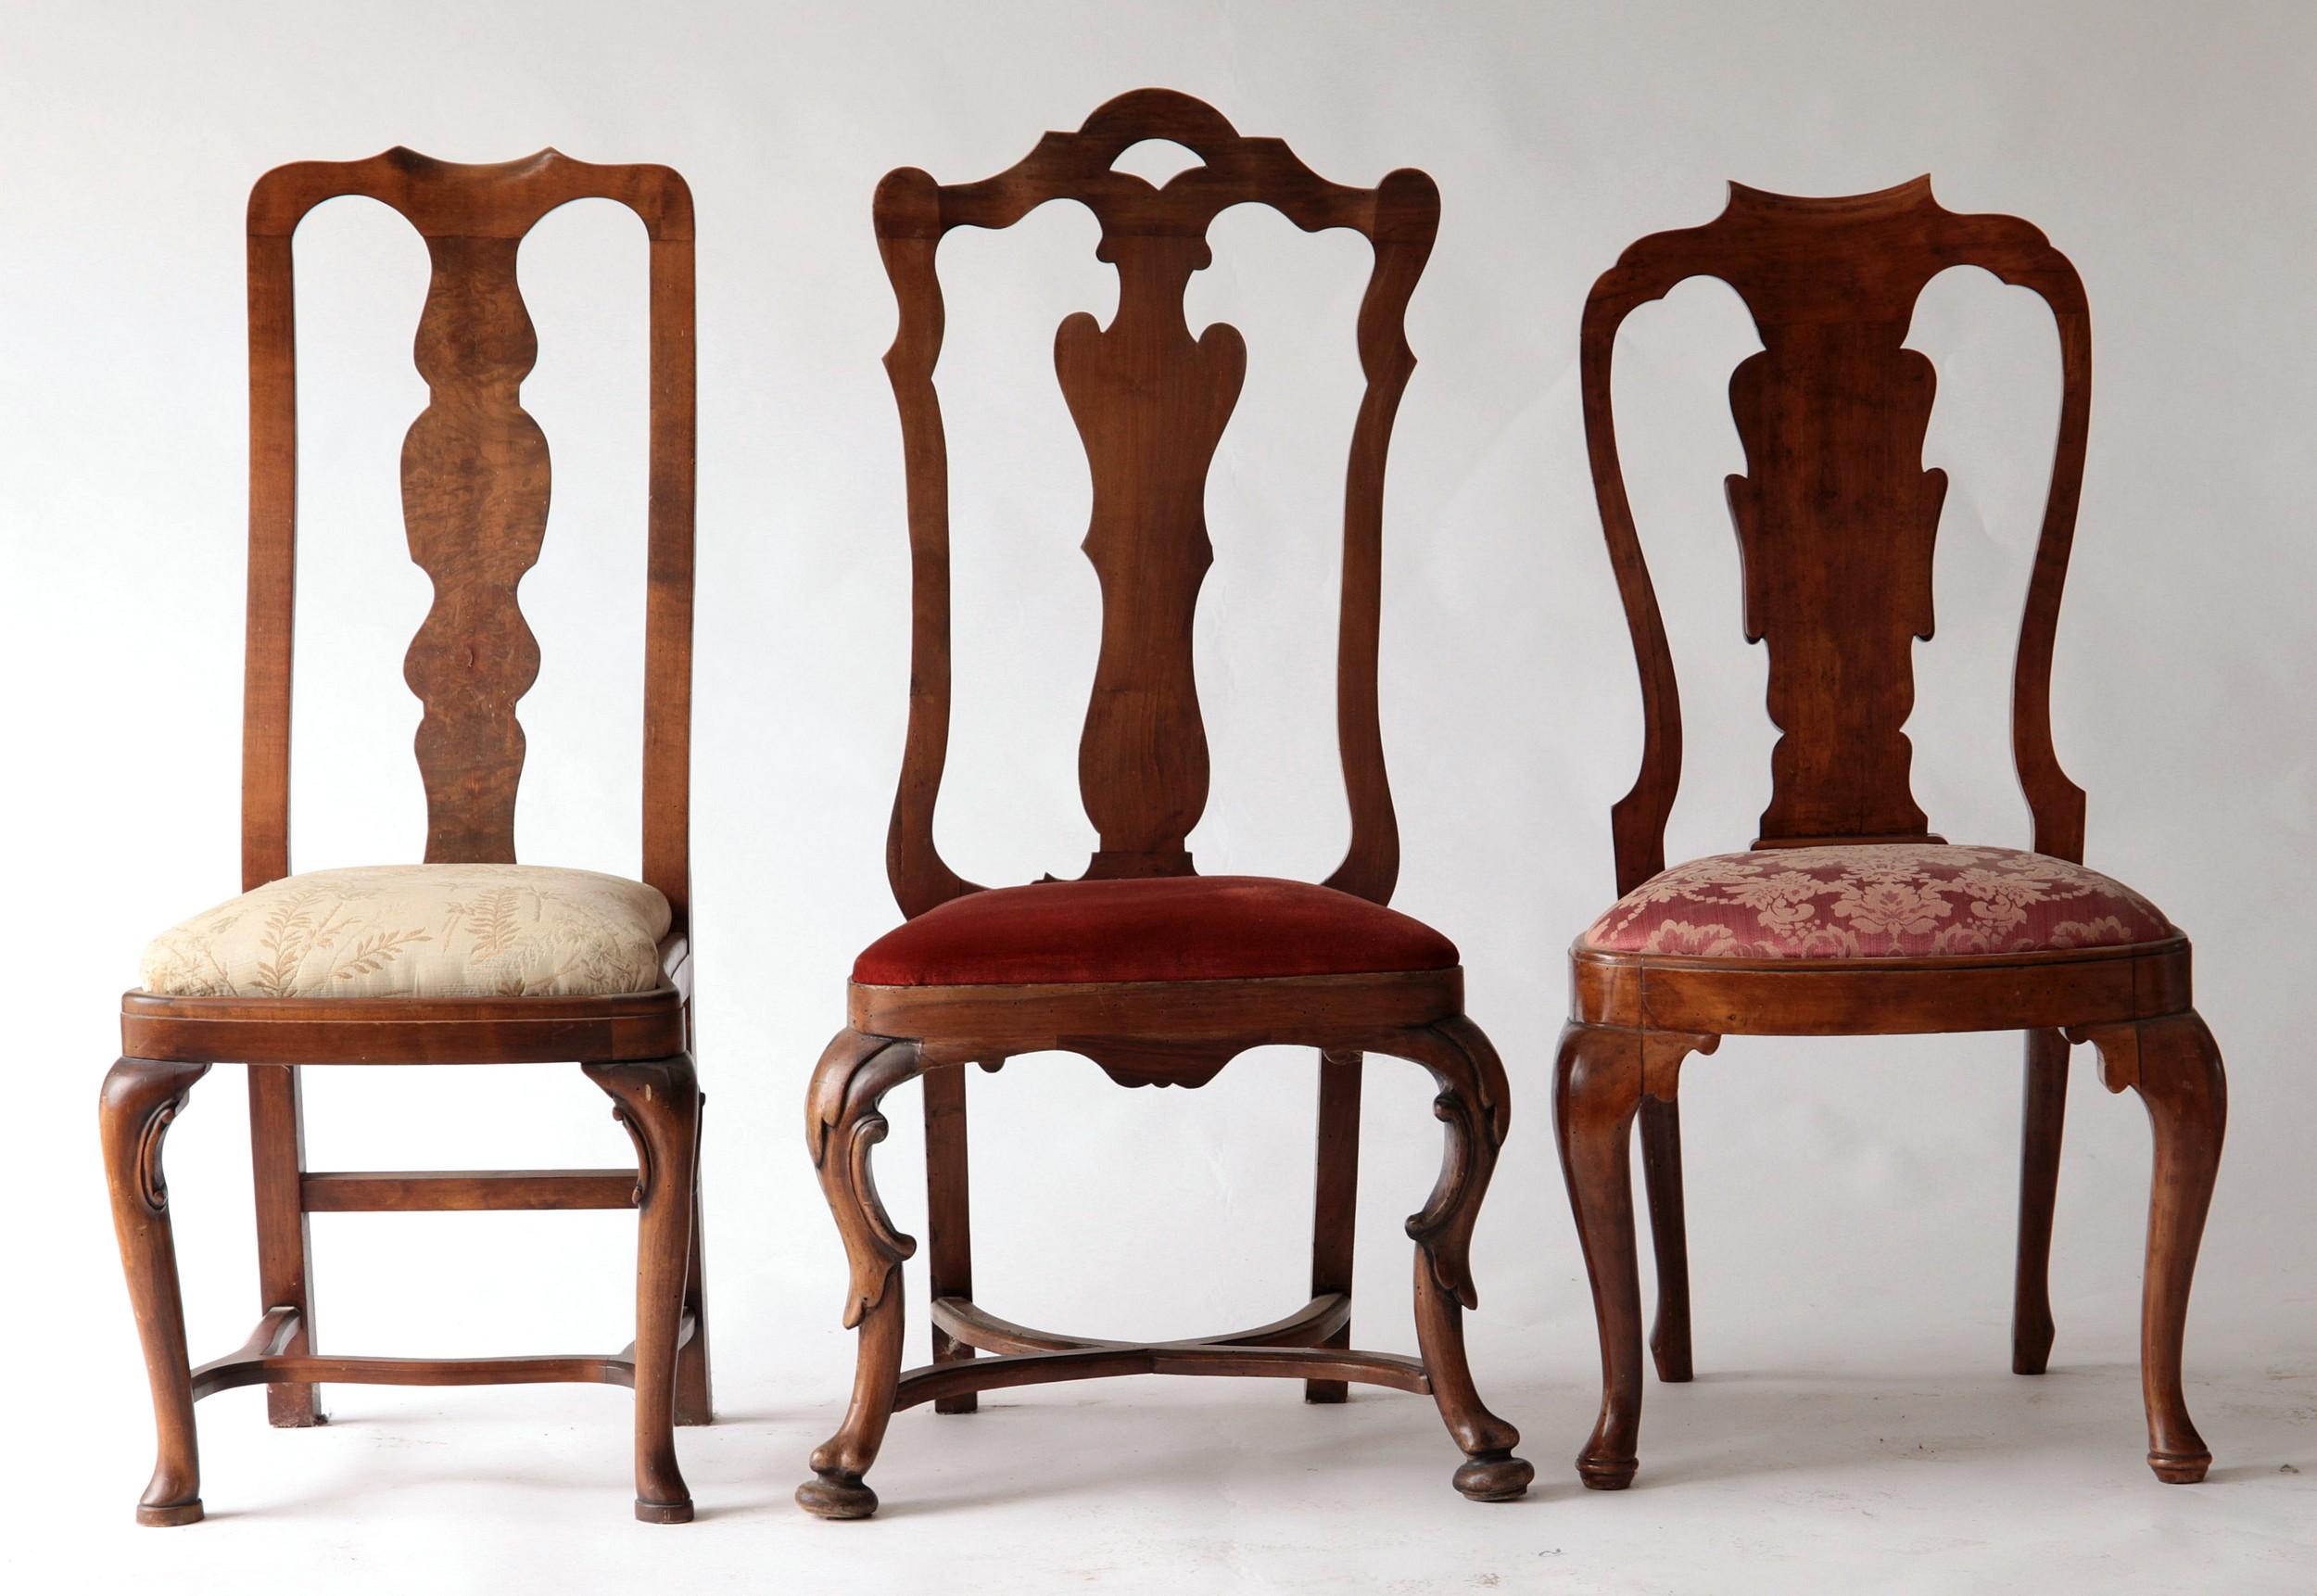 Schöner Satz von 6 Queen Anne Stühlen. Besteht aus acht verschiedenen Stuhltypen. 

Diese Gruppe wurde aus den verschiedenen Einzelstücken zusammengestellt, die im Laufe der Jahre gesammelt wurden. Aus der gleichen Kollektion der